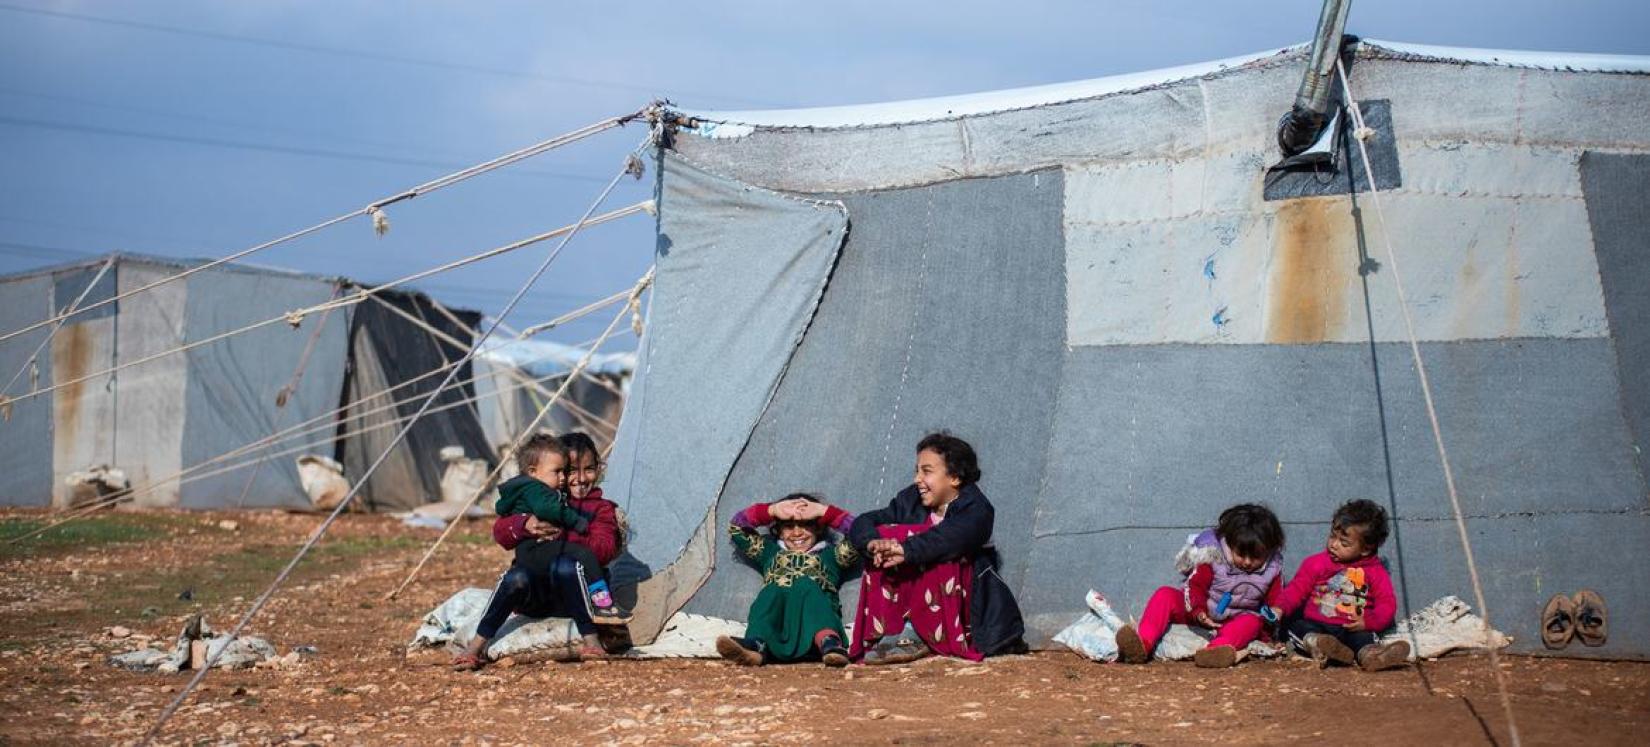 Crianças sentadas do lado de fora da barraca da família no acampamento improvisado de Alzhouriyeh, na zona rural de Homs, na Síria.